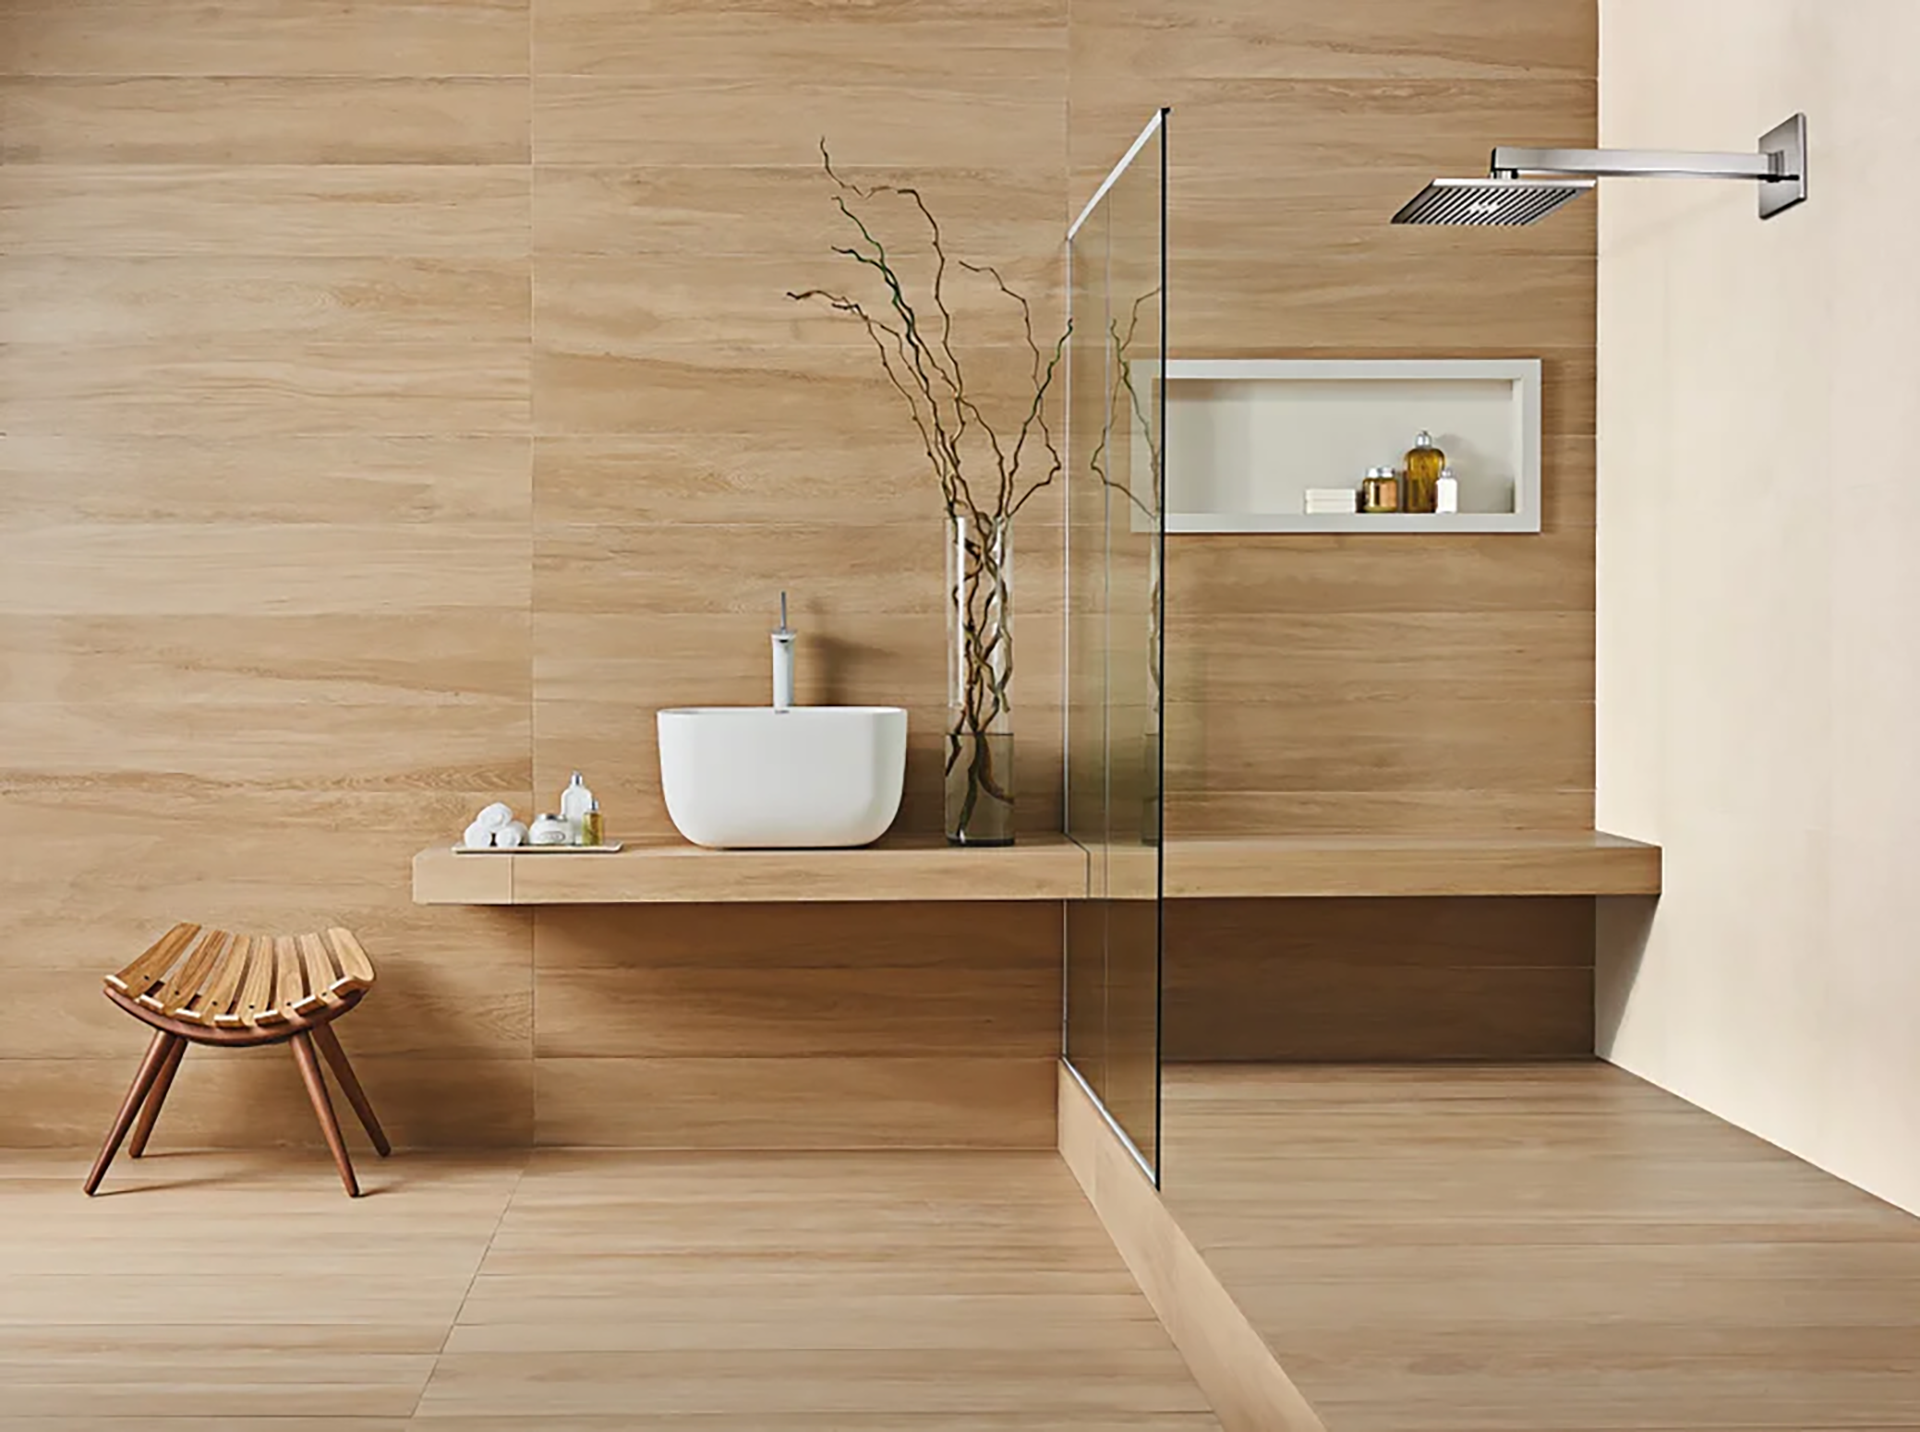 Banheiro minimalista com revestimento de piso e parede em porcelanato que reproduz madeira